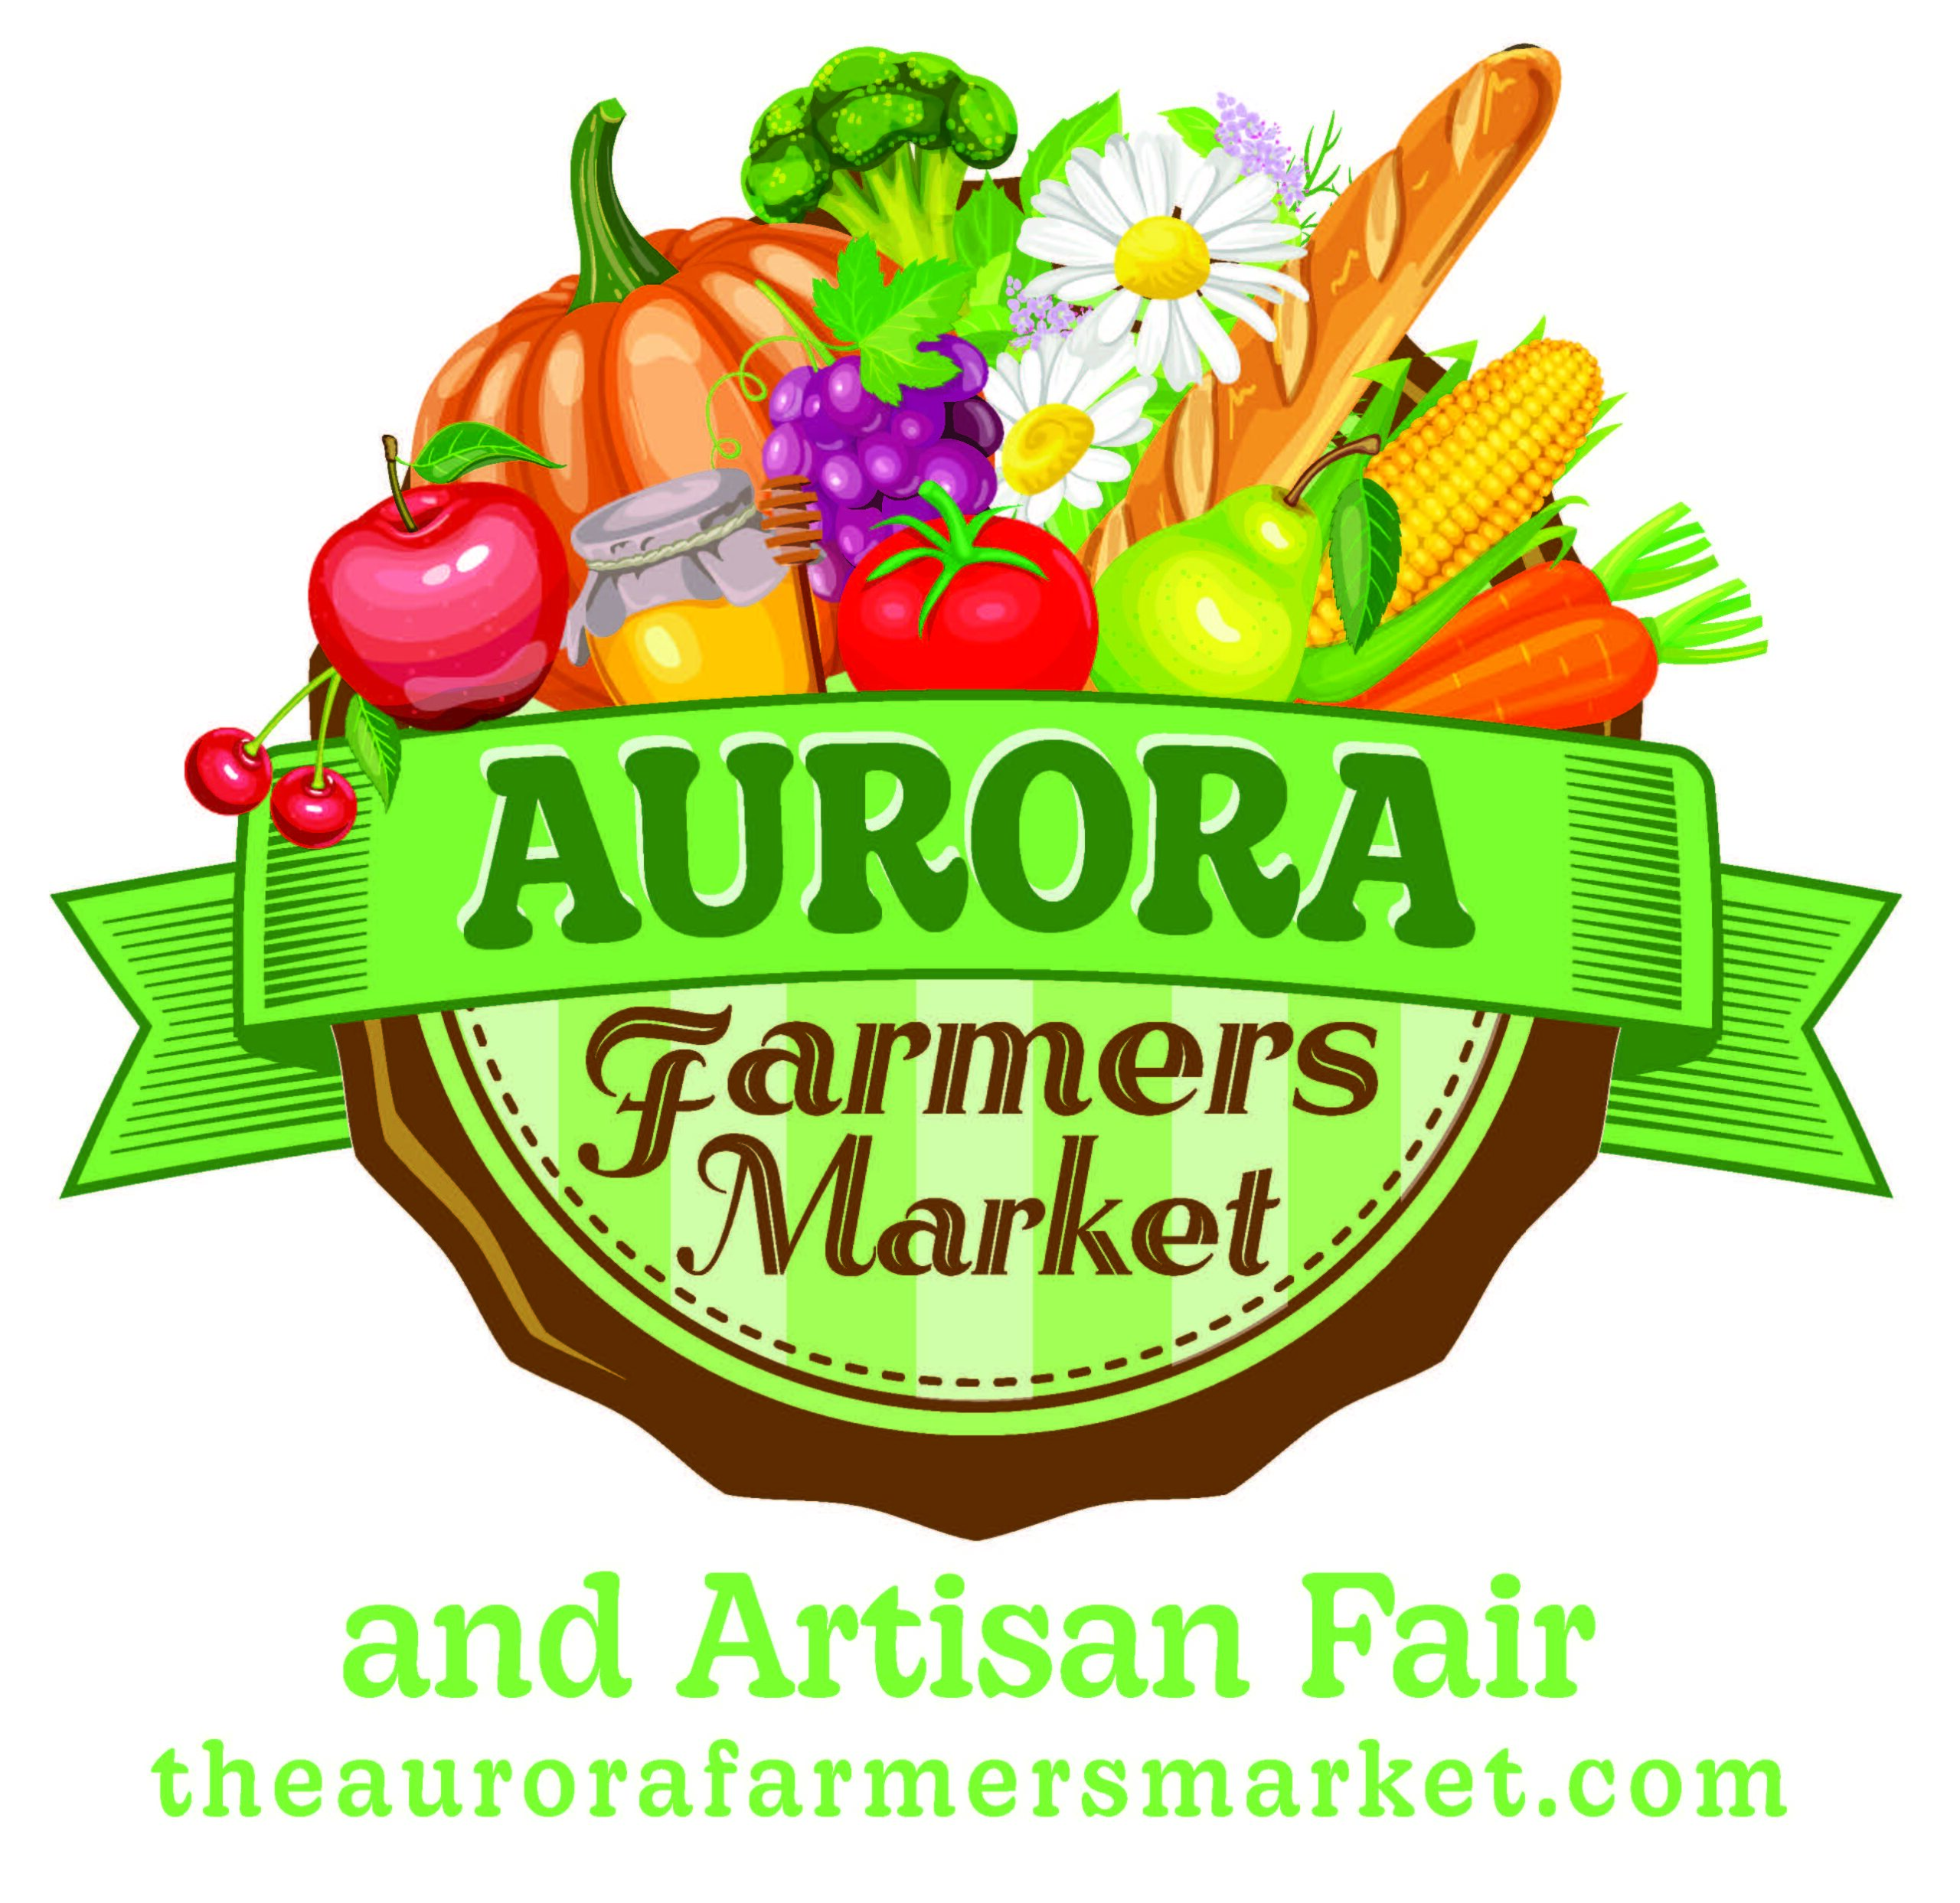 Aurora Farmers Market & Artisan Fair